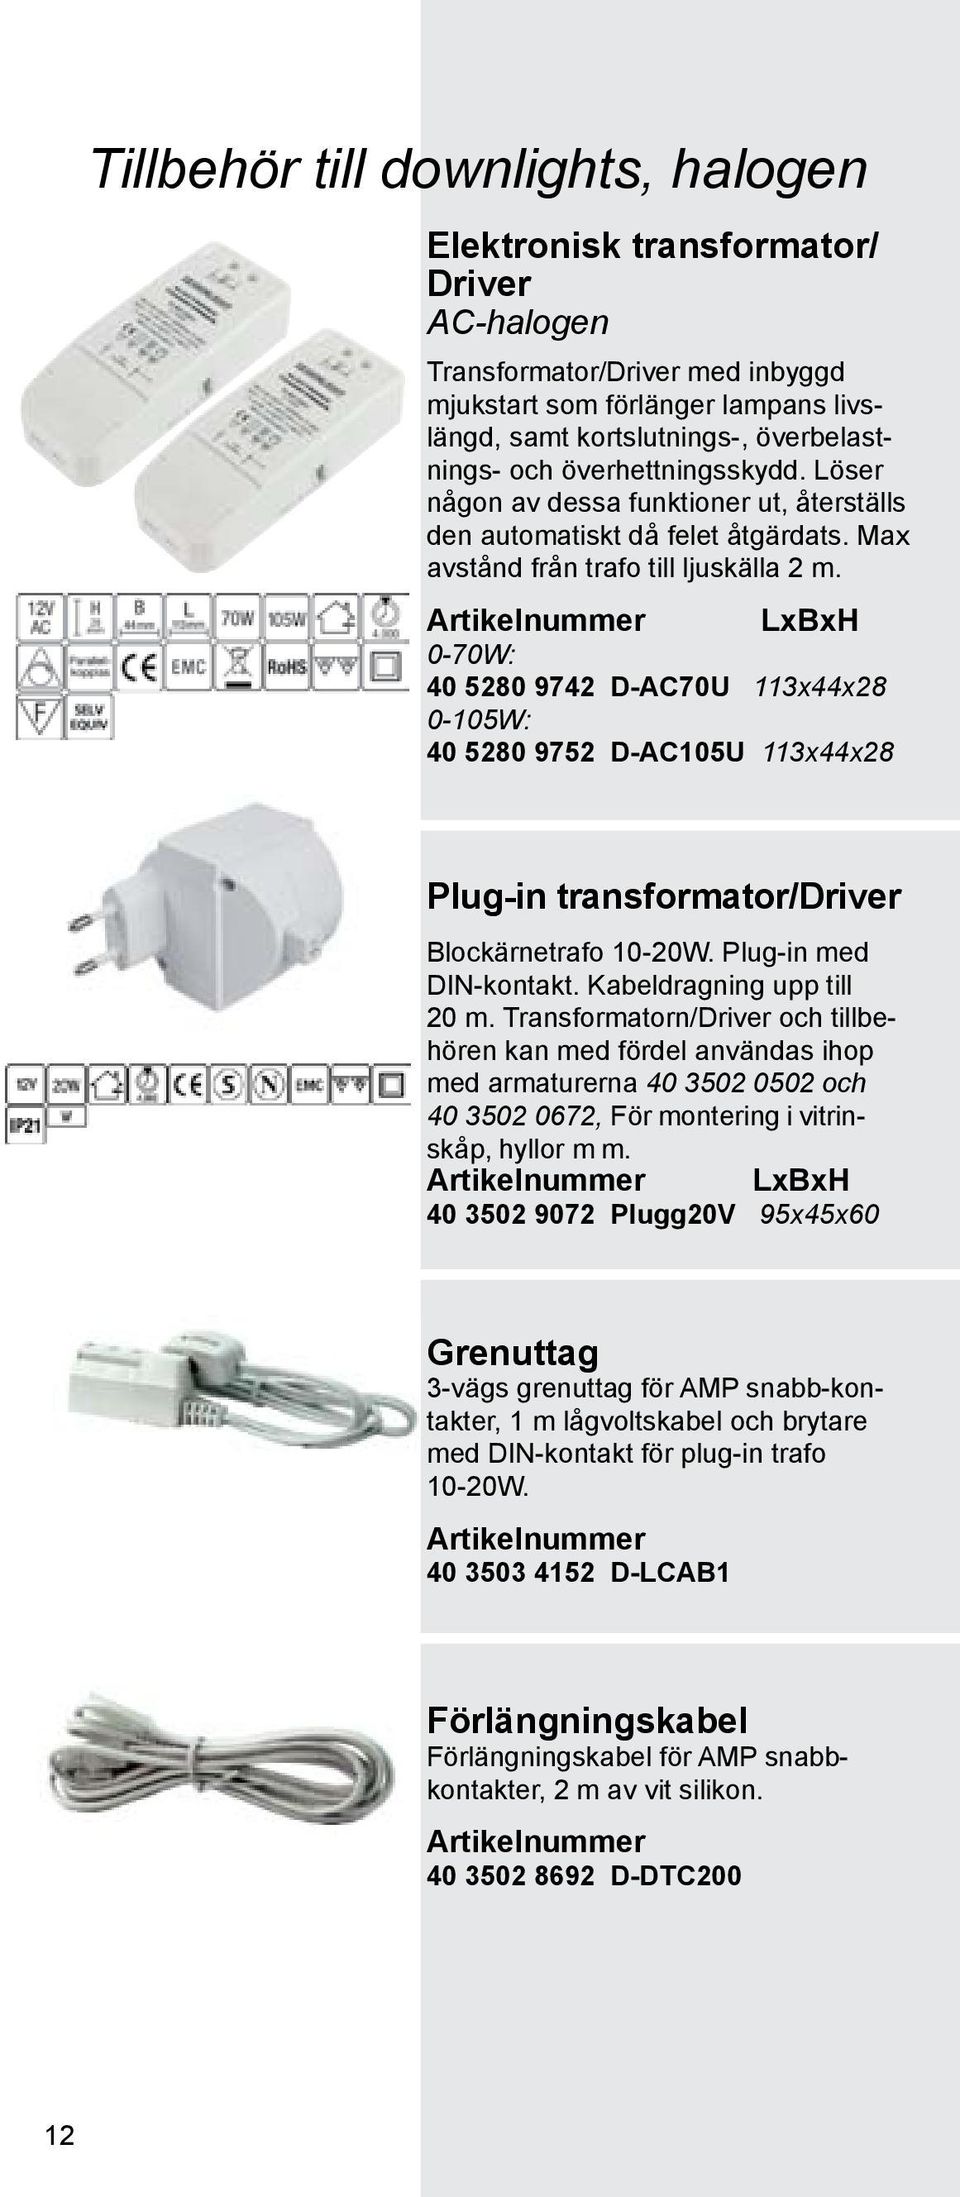 LxBxH 0-70W: 40 5280 9742 D-AC70U 113x44x28 0-105W: 40 5280 9752 D-AC105U 113x44x28 Plug-in transformator/driver Blockärnetrafo 10-20W. Plug-in med DIN-kontakt. Kabeldragning upp till 20 m.